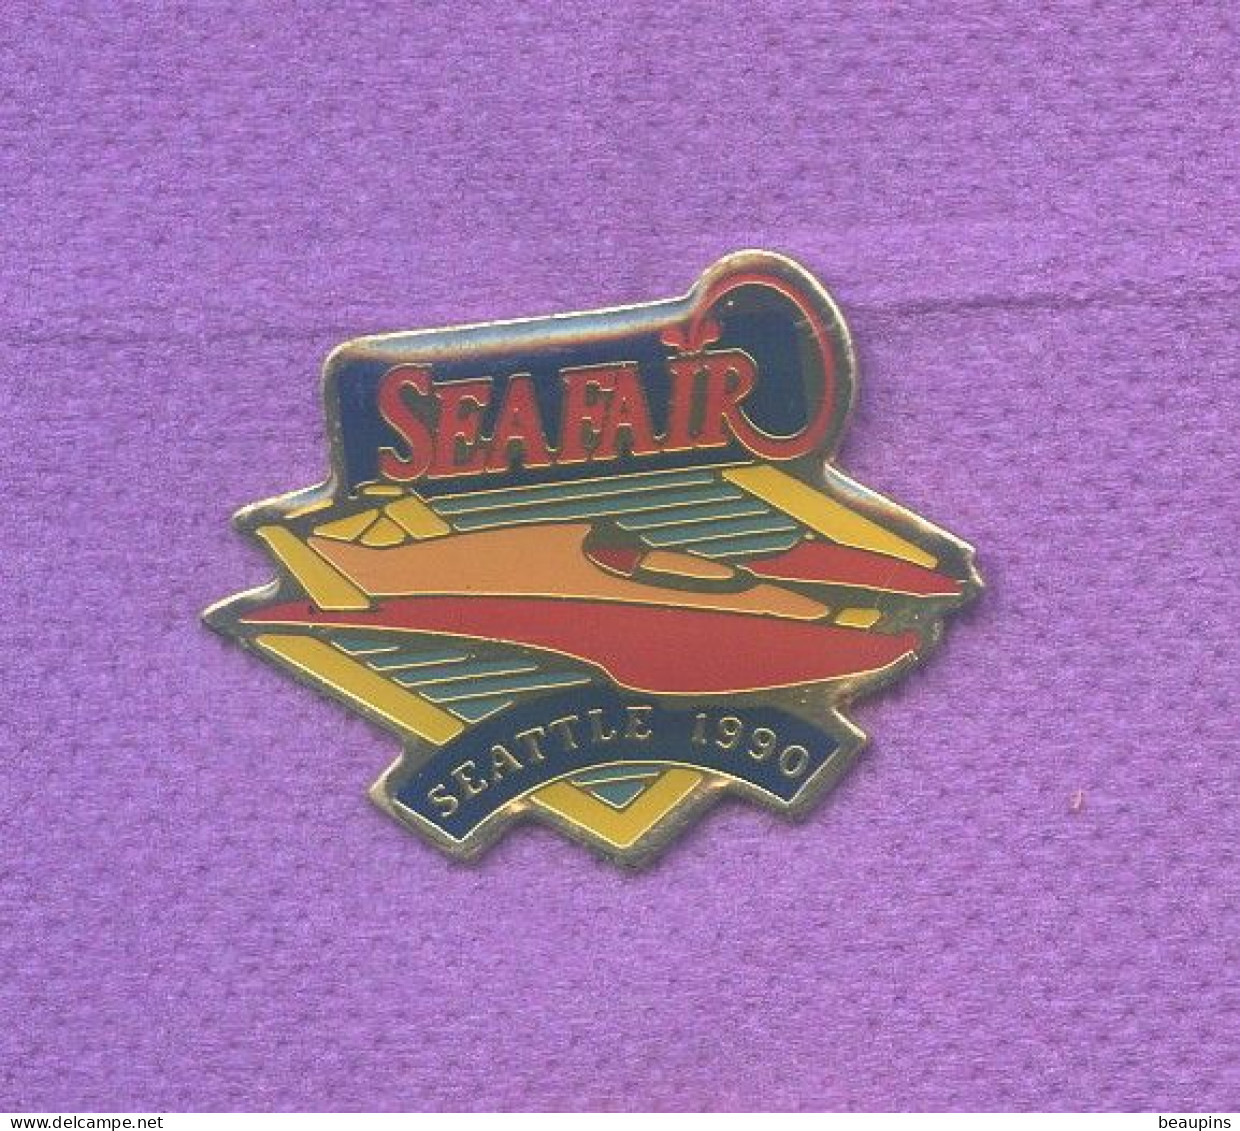 Rare Pins Off Shore Bateau Seattle Usa 1990 Sea Fair N513 - Boats